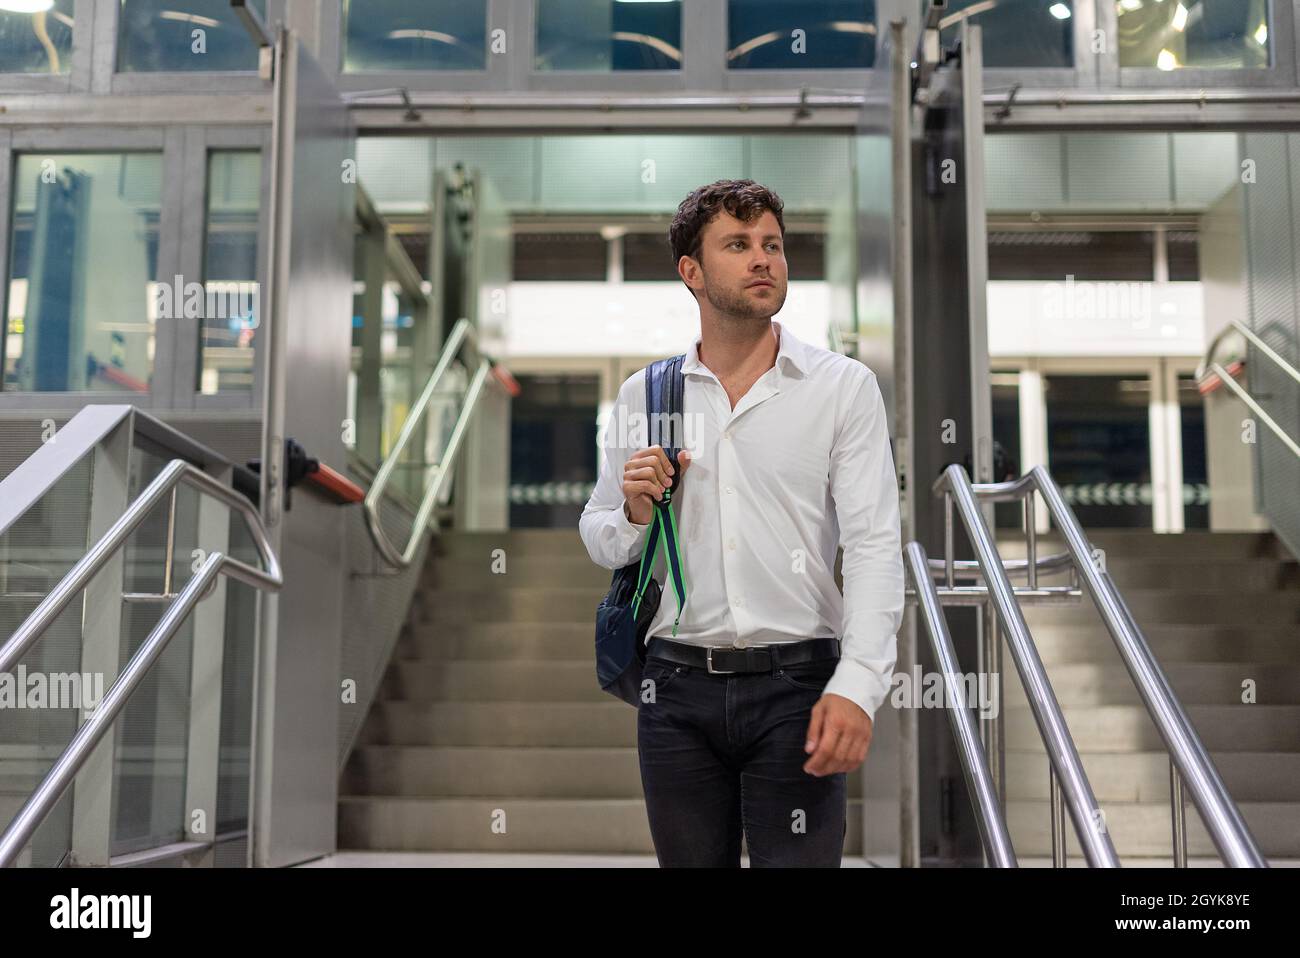 Männlicher Manager in eleganter, legerer Kleidung, die eine Tasche trägt und wegschaut, während er auf einer Geschäftsreise auf der Treppe auf dem Flughafen steht Stockfoto